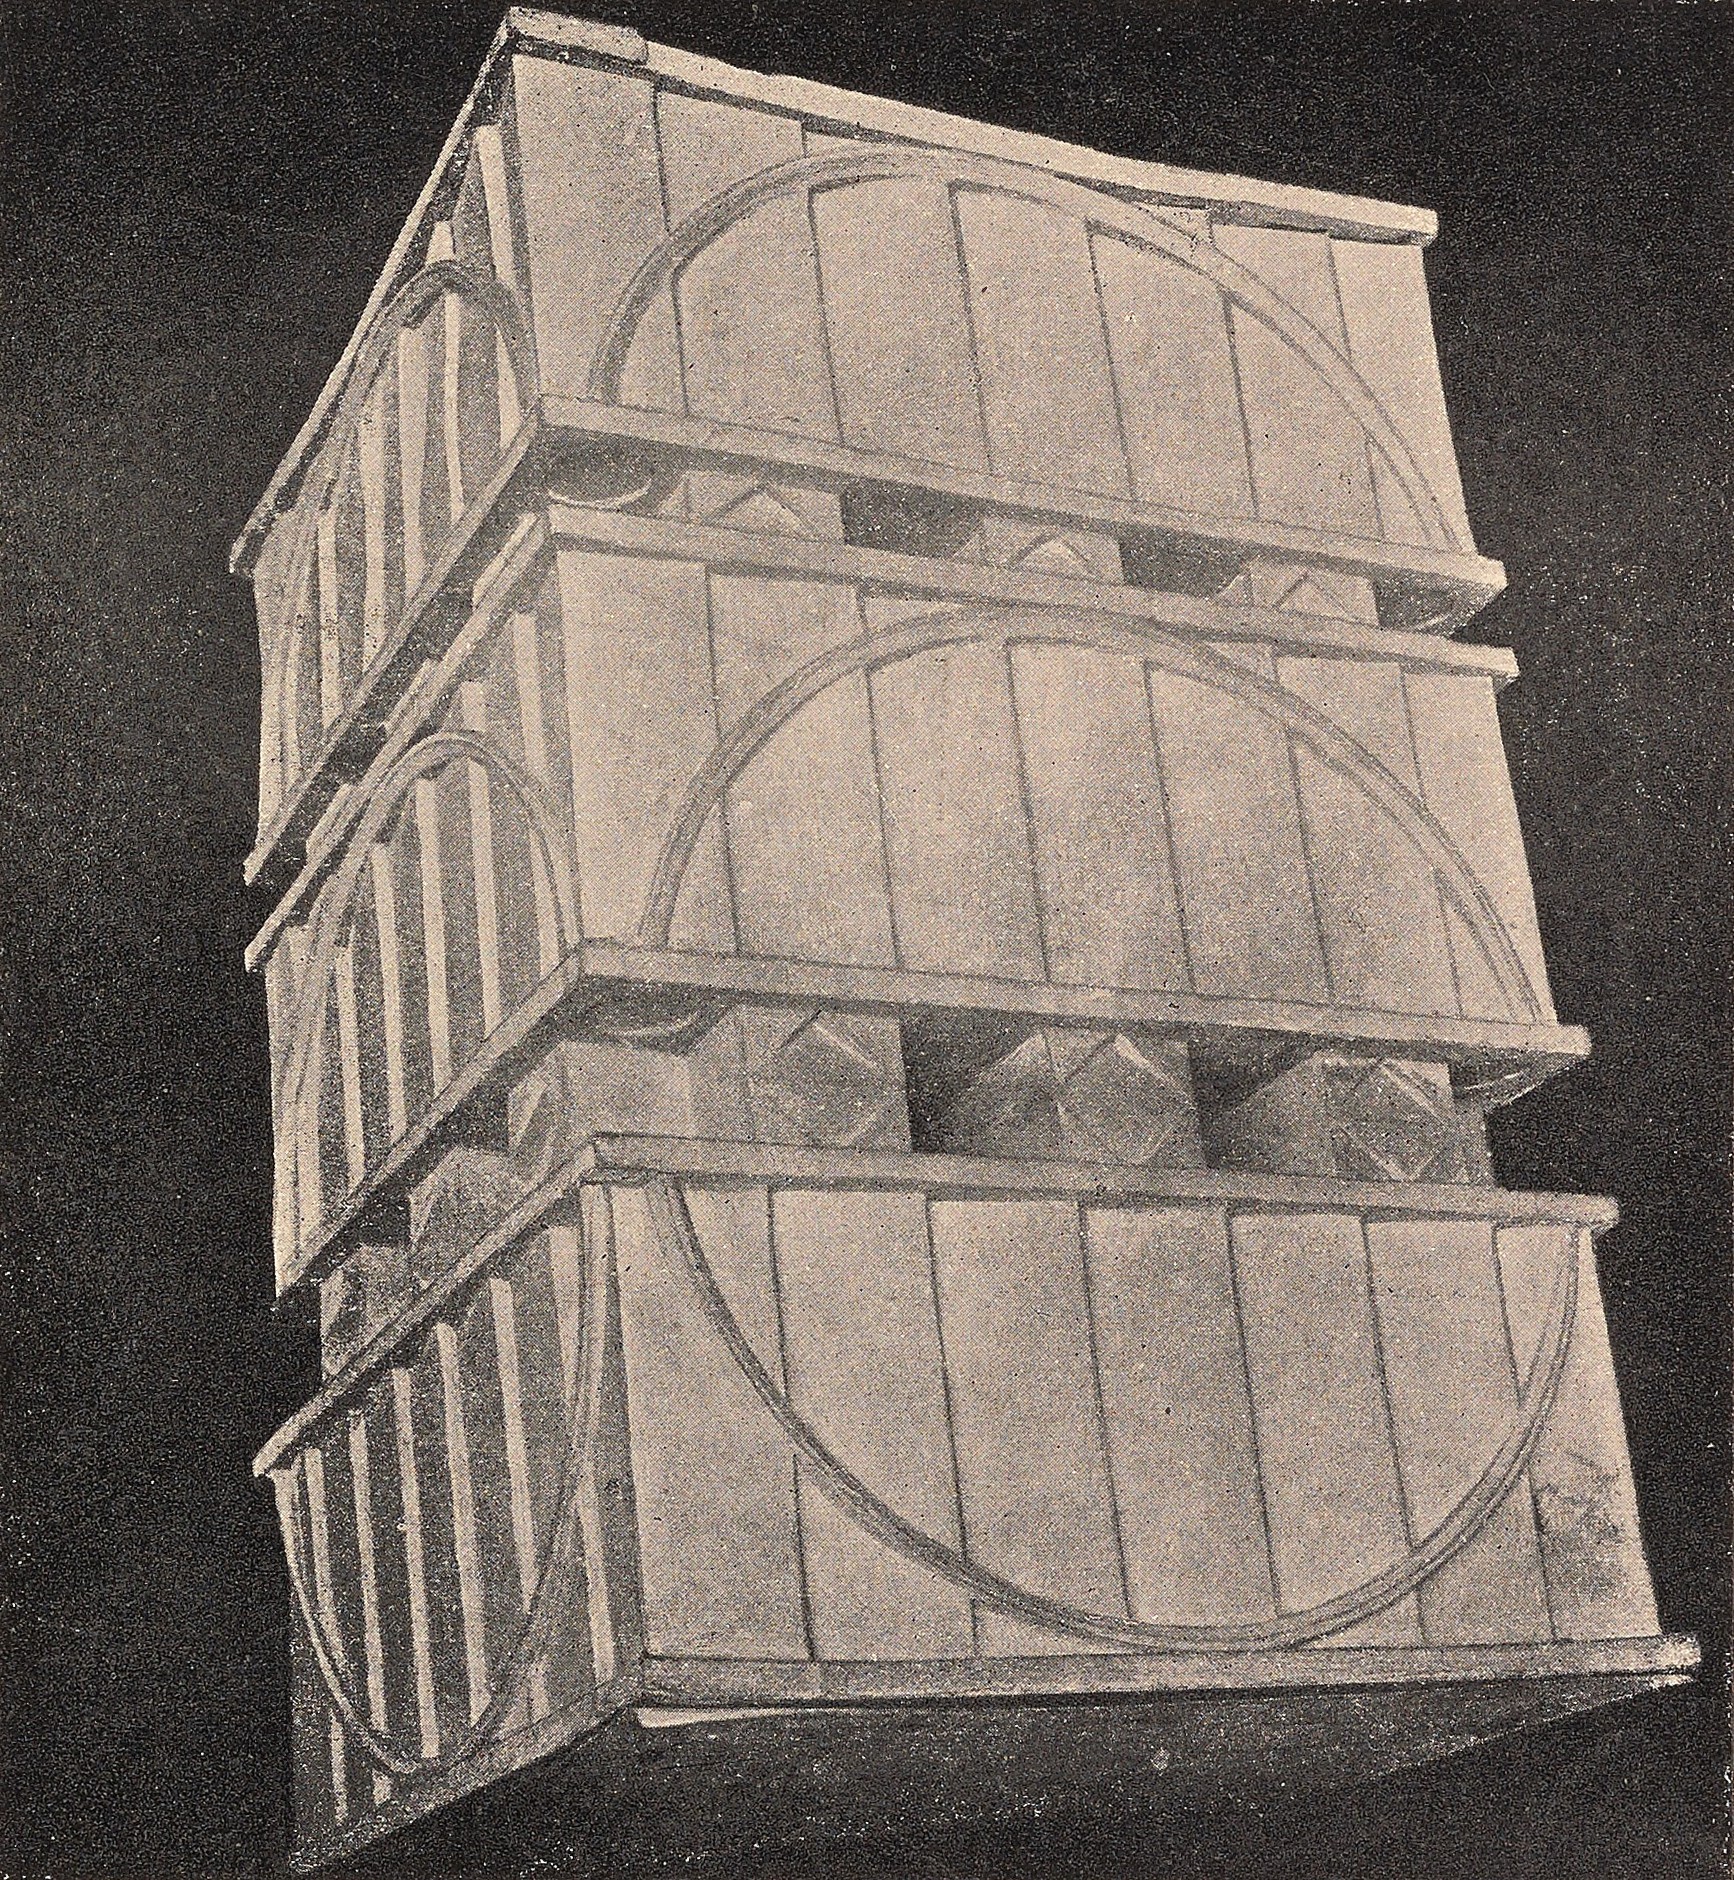 Архитектурное задание на выявление геометрических свойств формы. Работа студента В. А. Петрова, 1920 г. Руководитель профессор Н. А. Ладовский